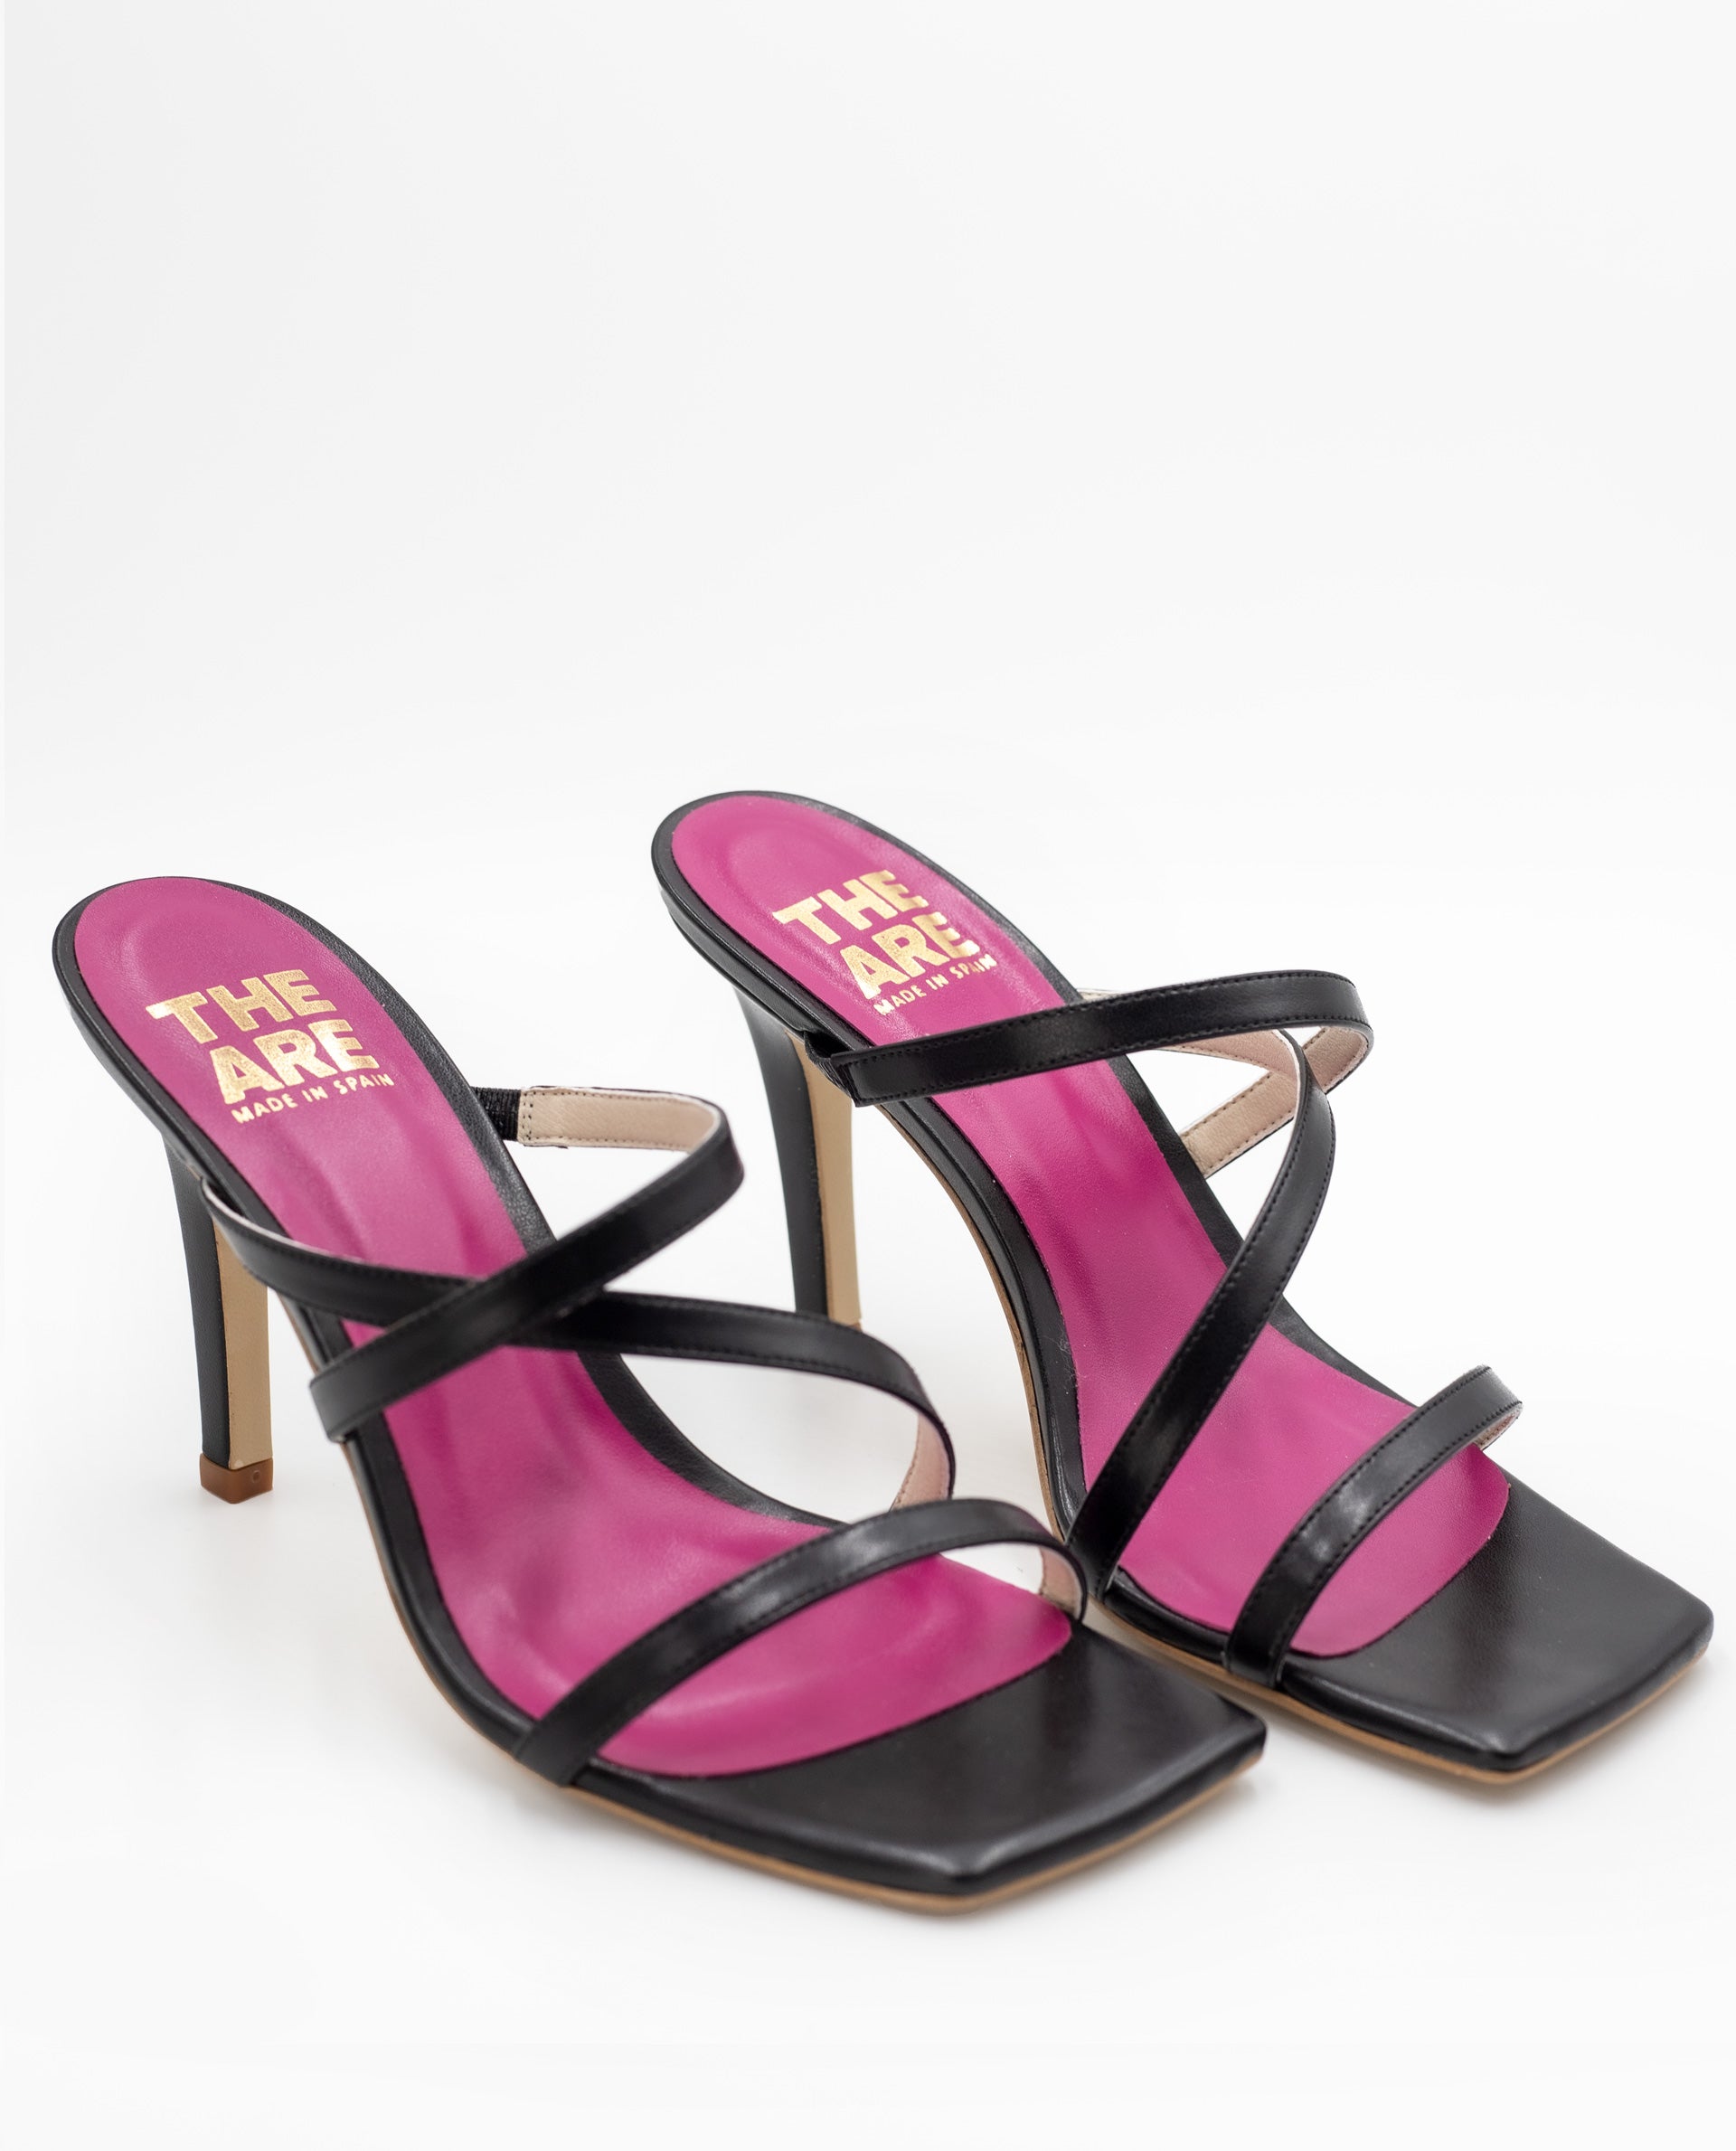 SANDALIA #3 | Sandalia de Tacón Negro con Plataforma | Zapatos THE-ARE